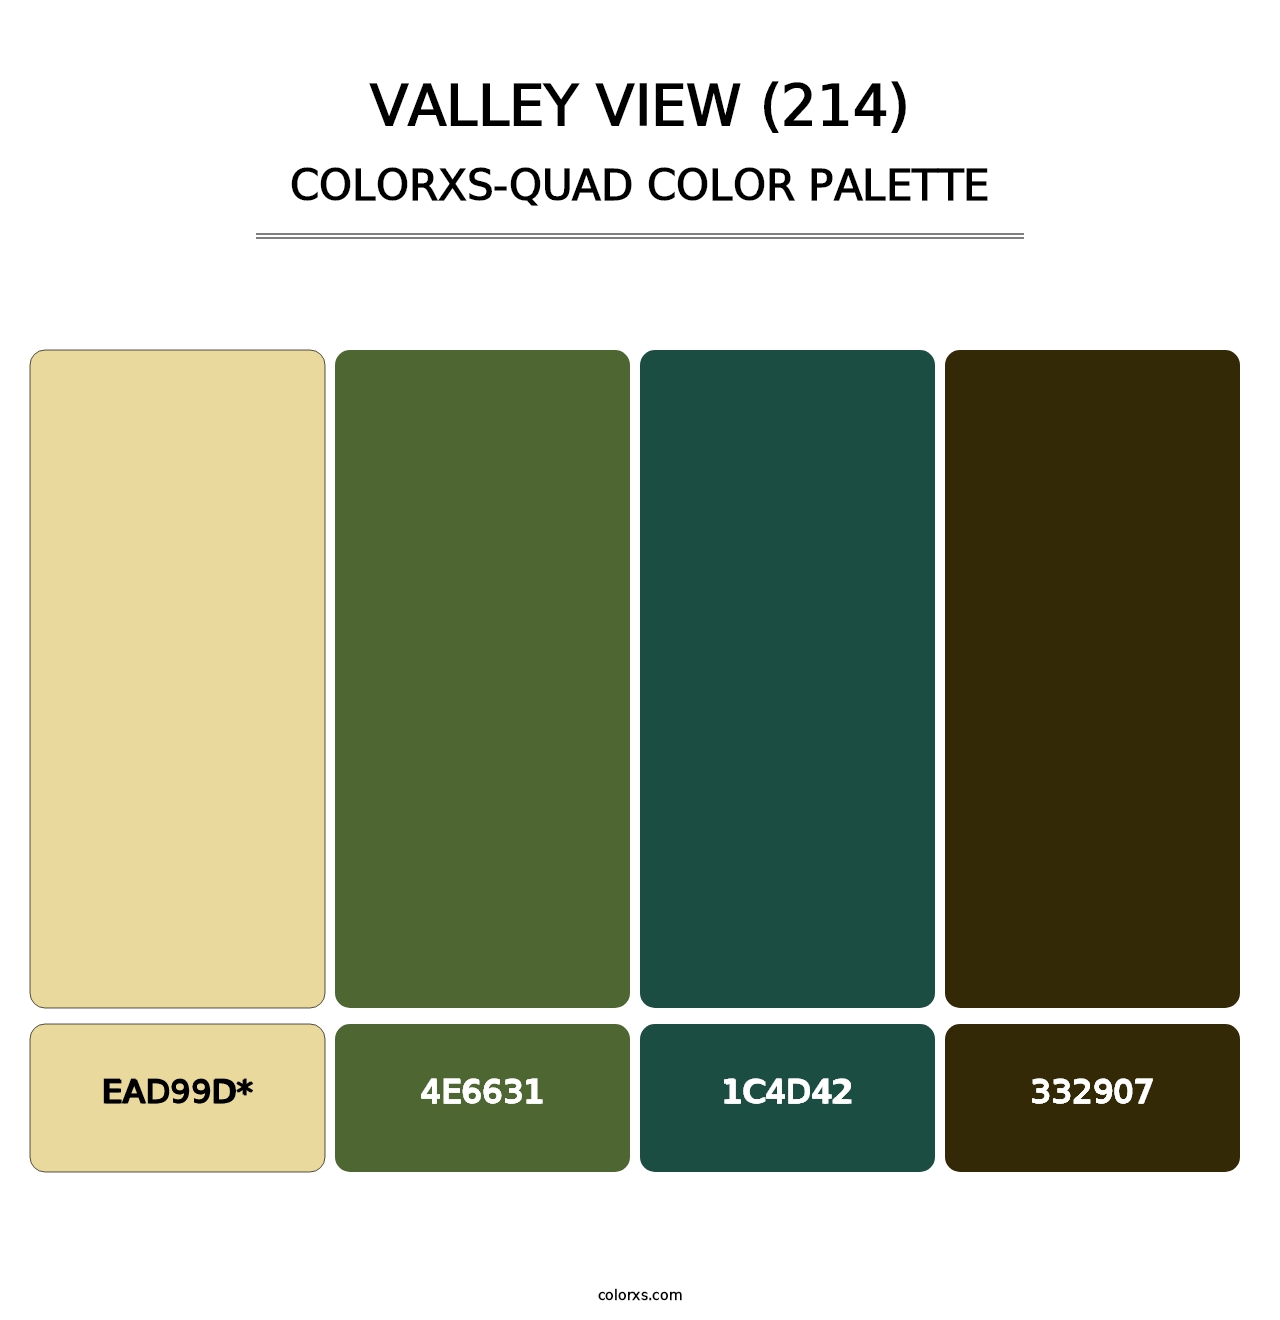 Valley View (214) - Colorxs Quad Palette